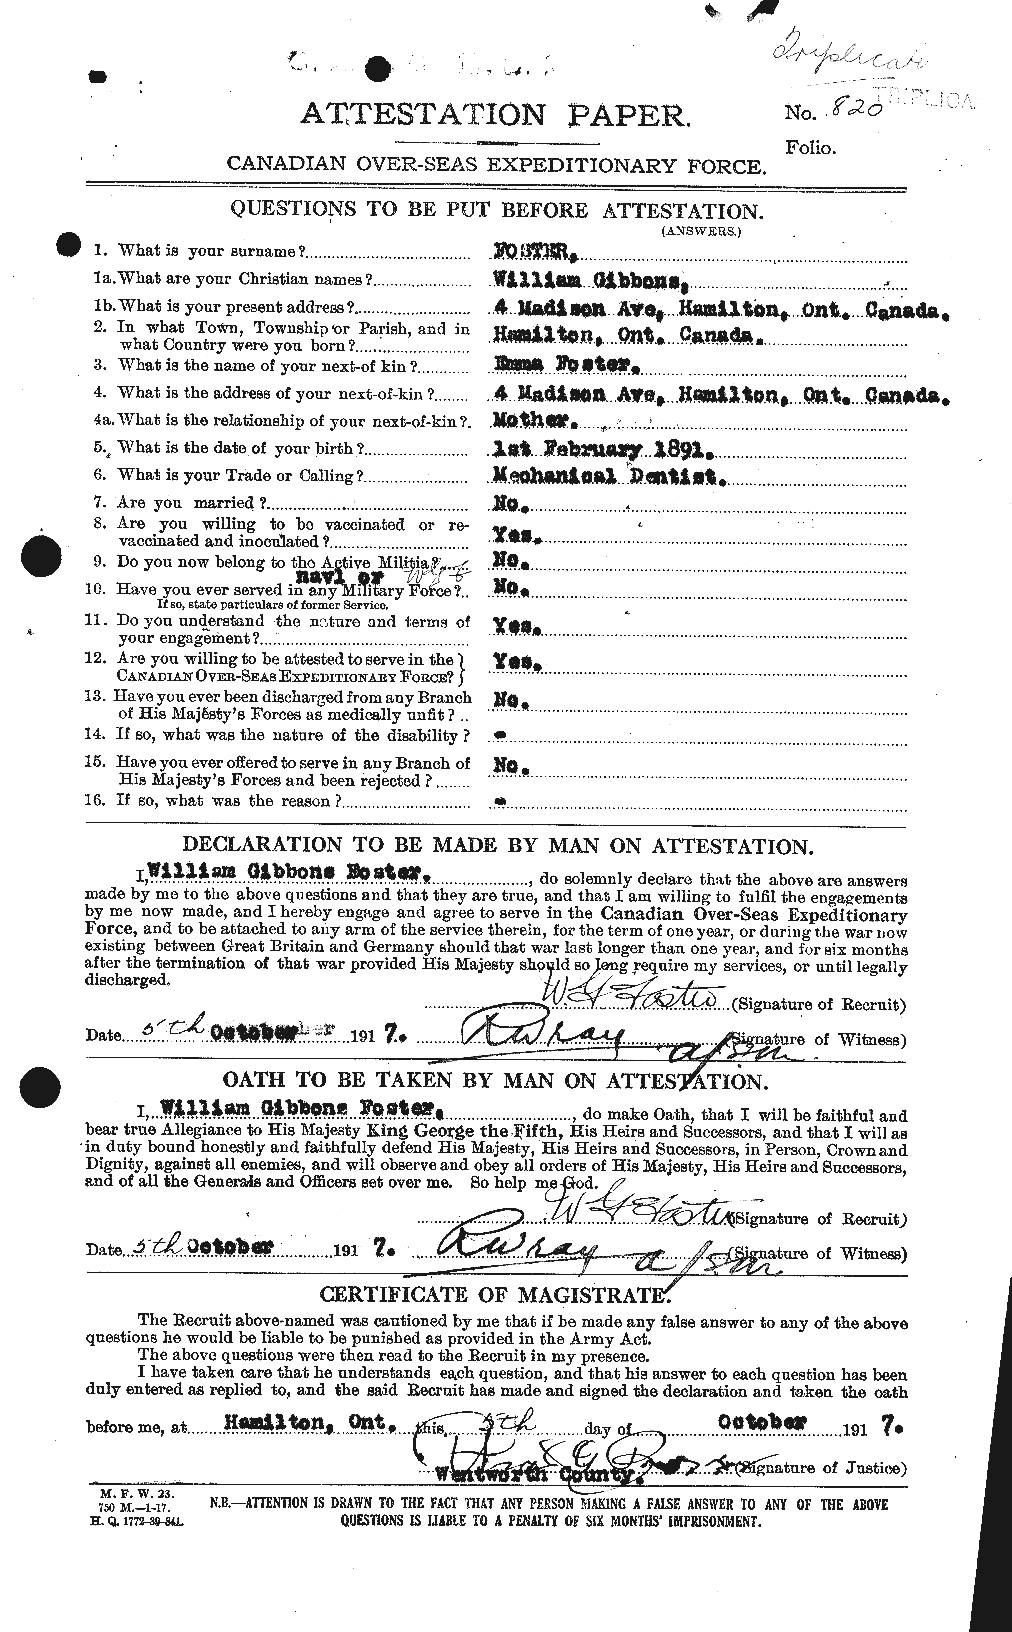 Dossiers du Personnel de la Première Guerre mondiale - CEC 328745a